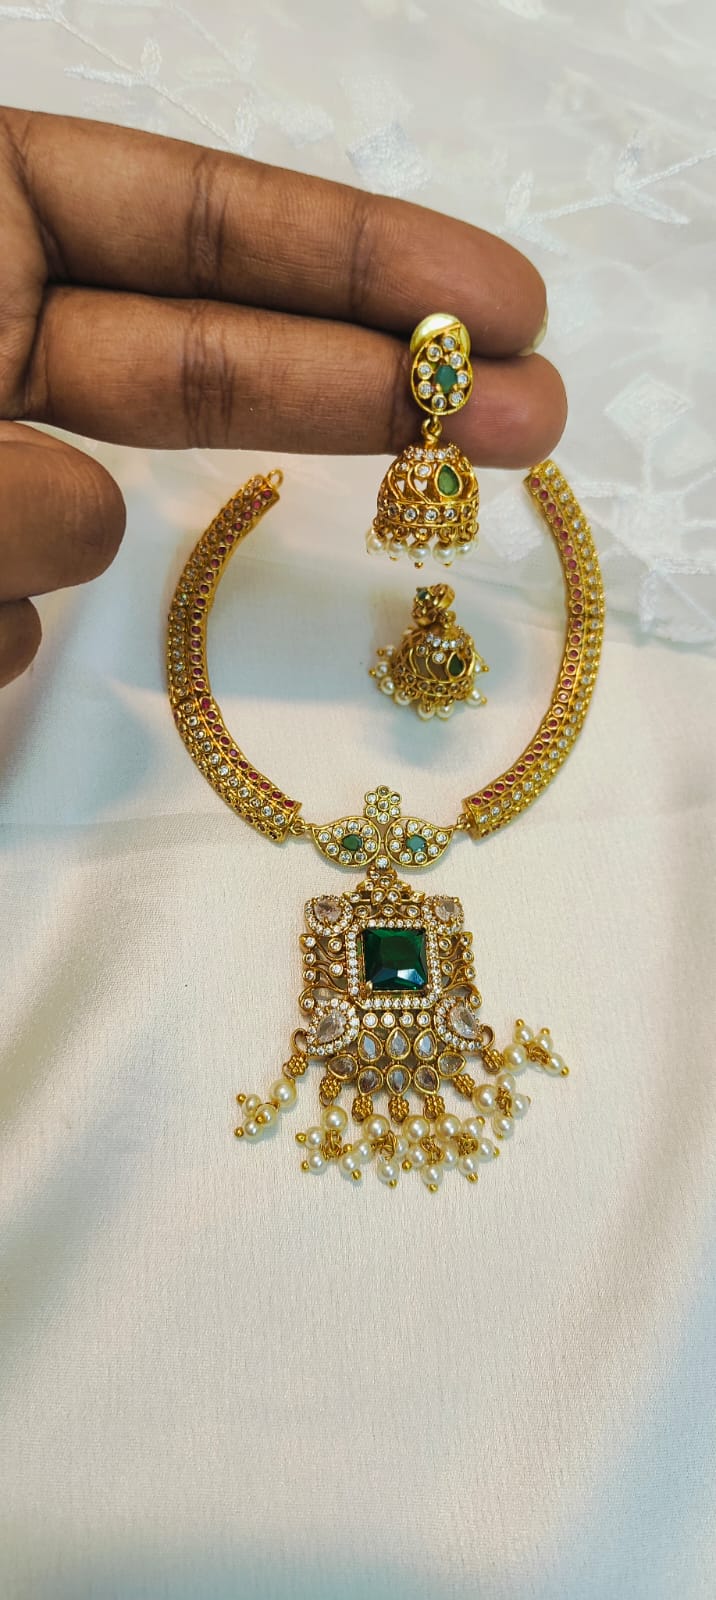 Divine Cz stone necklace set